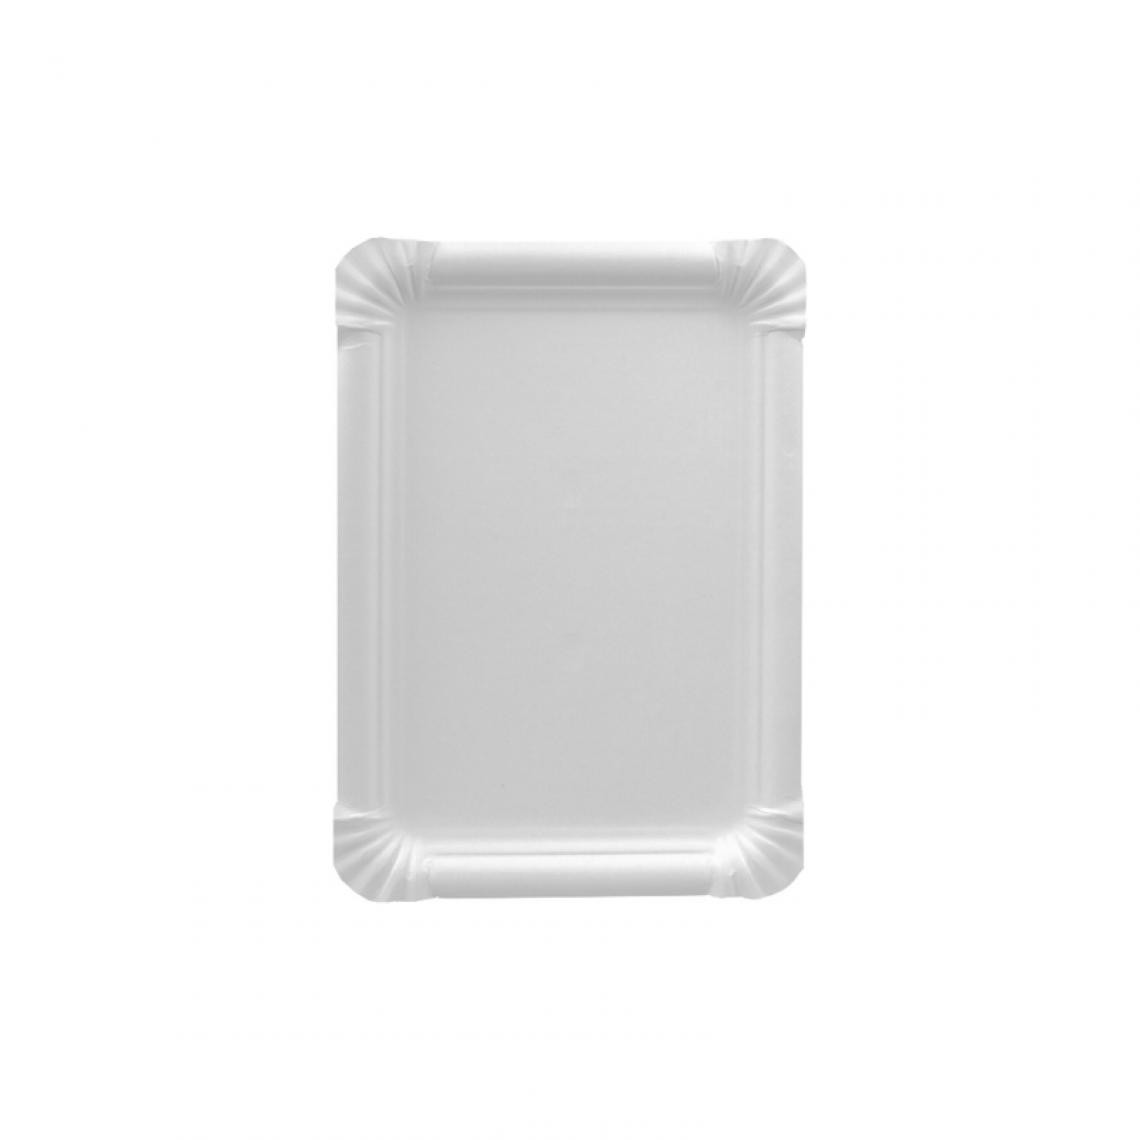 PAPSTAR - PAPSTAR Assiette en carton 'pure' rectangulaire, blanc () - Cuisine et ménage